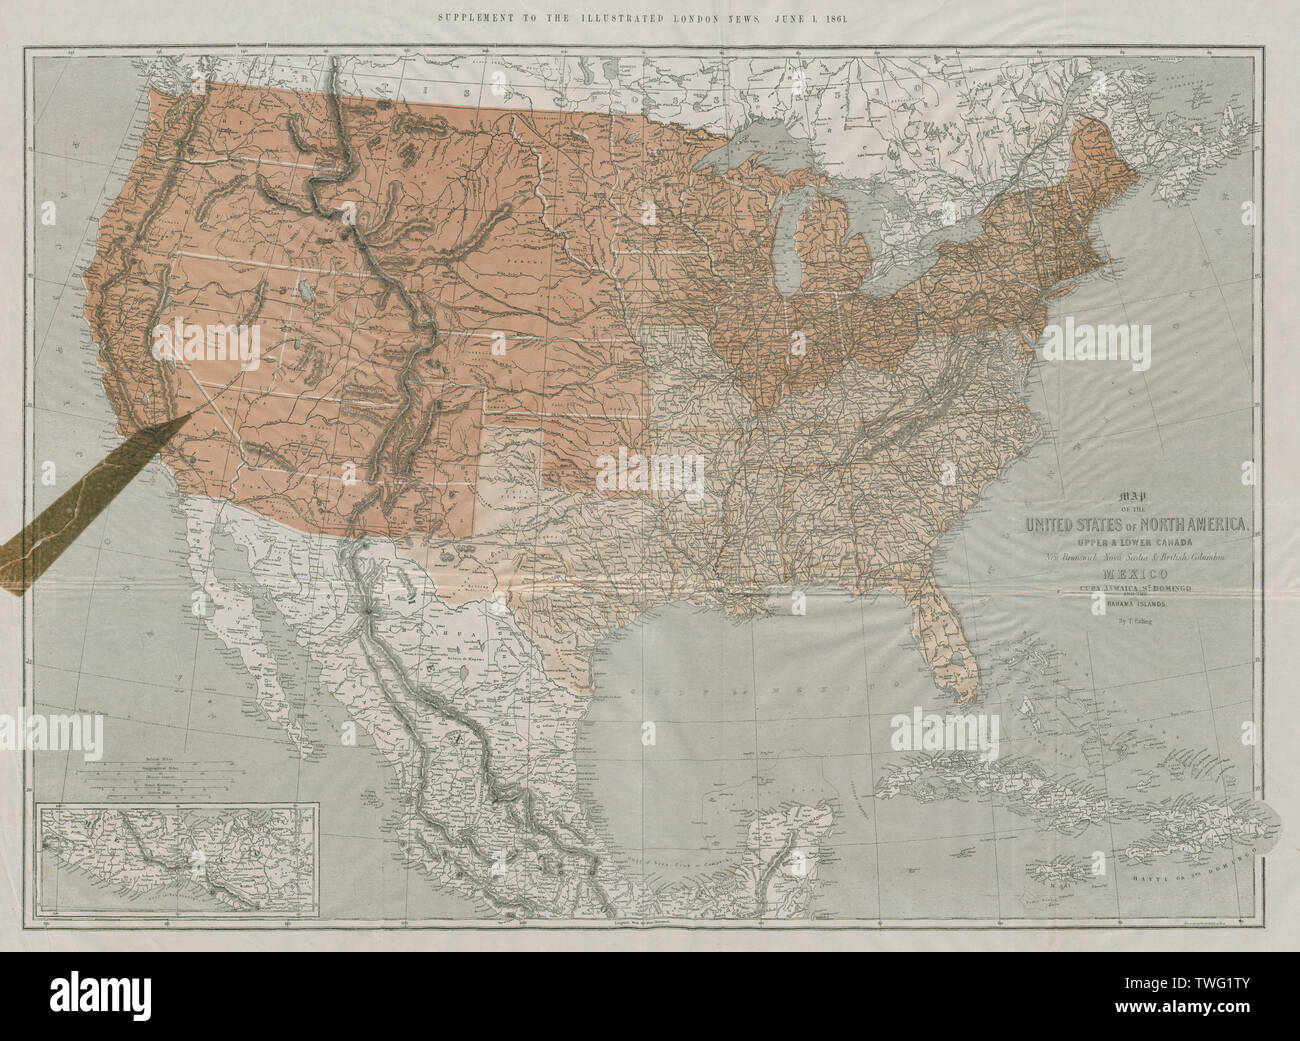 Gran Guerra Civil Mapa De Los Estados Unidos Asentamiento Illustrated